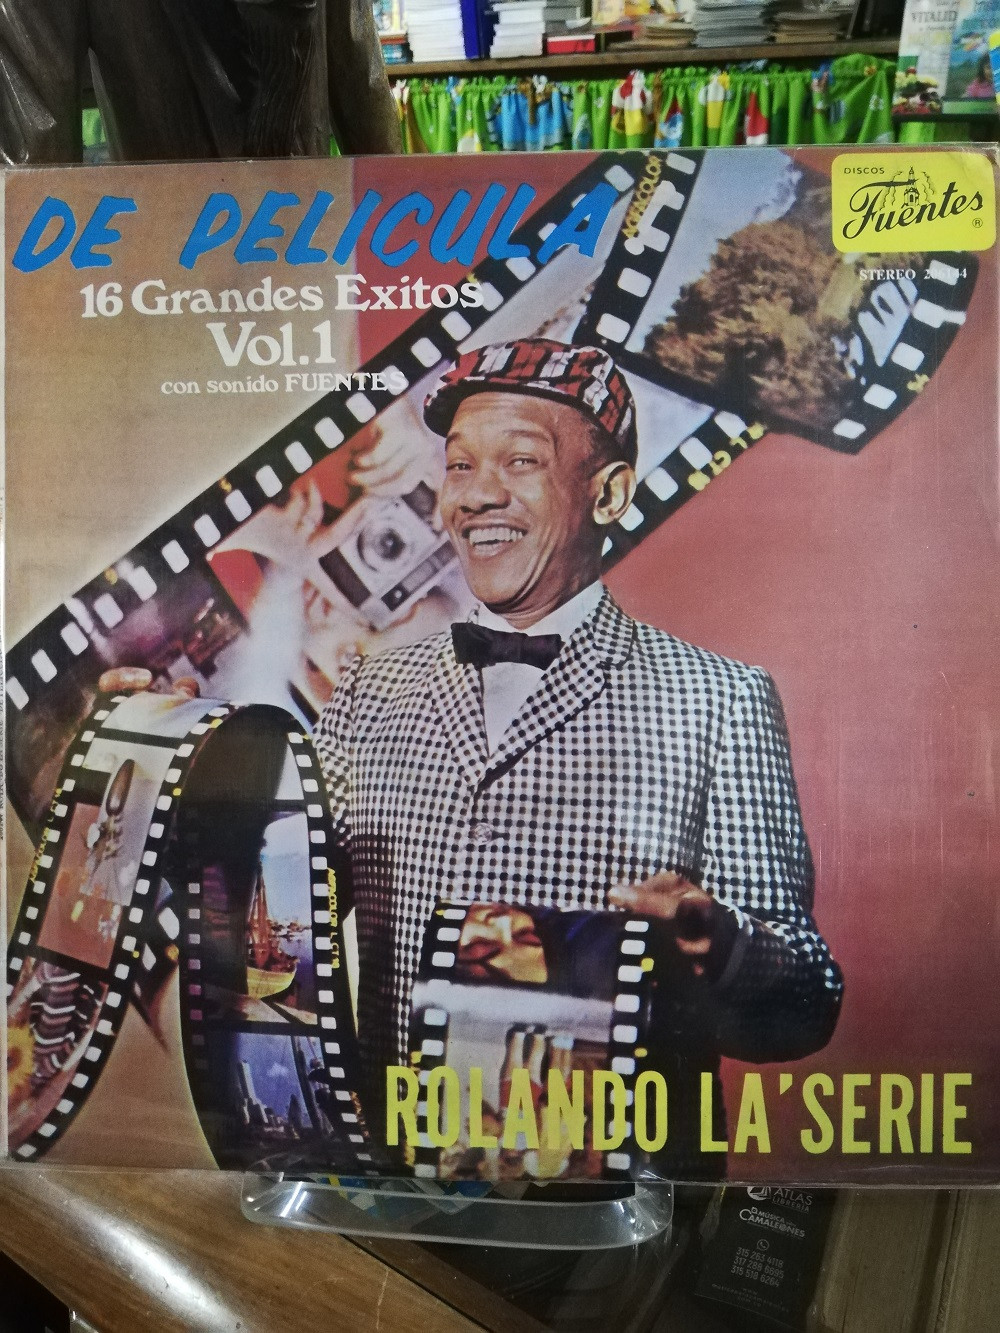 Imagen LP ROLANDO LA SERIE - DE PELICULA, 16 GRANDES EXITOS VOL. 1